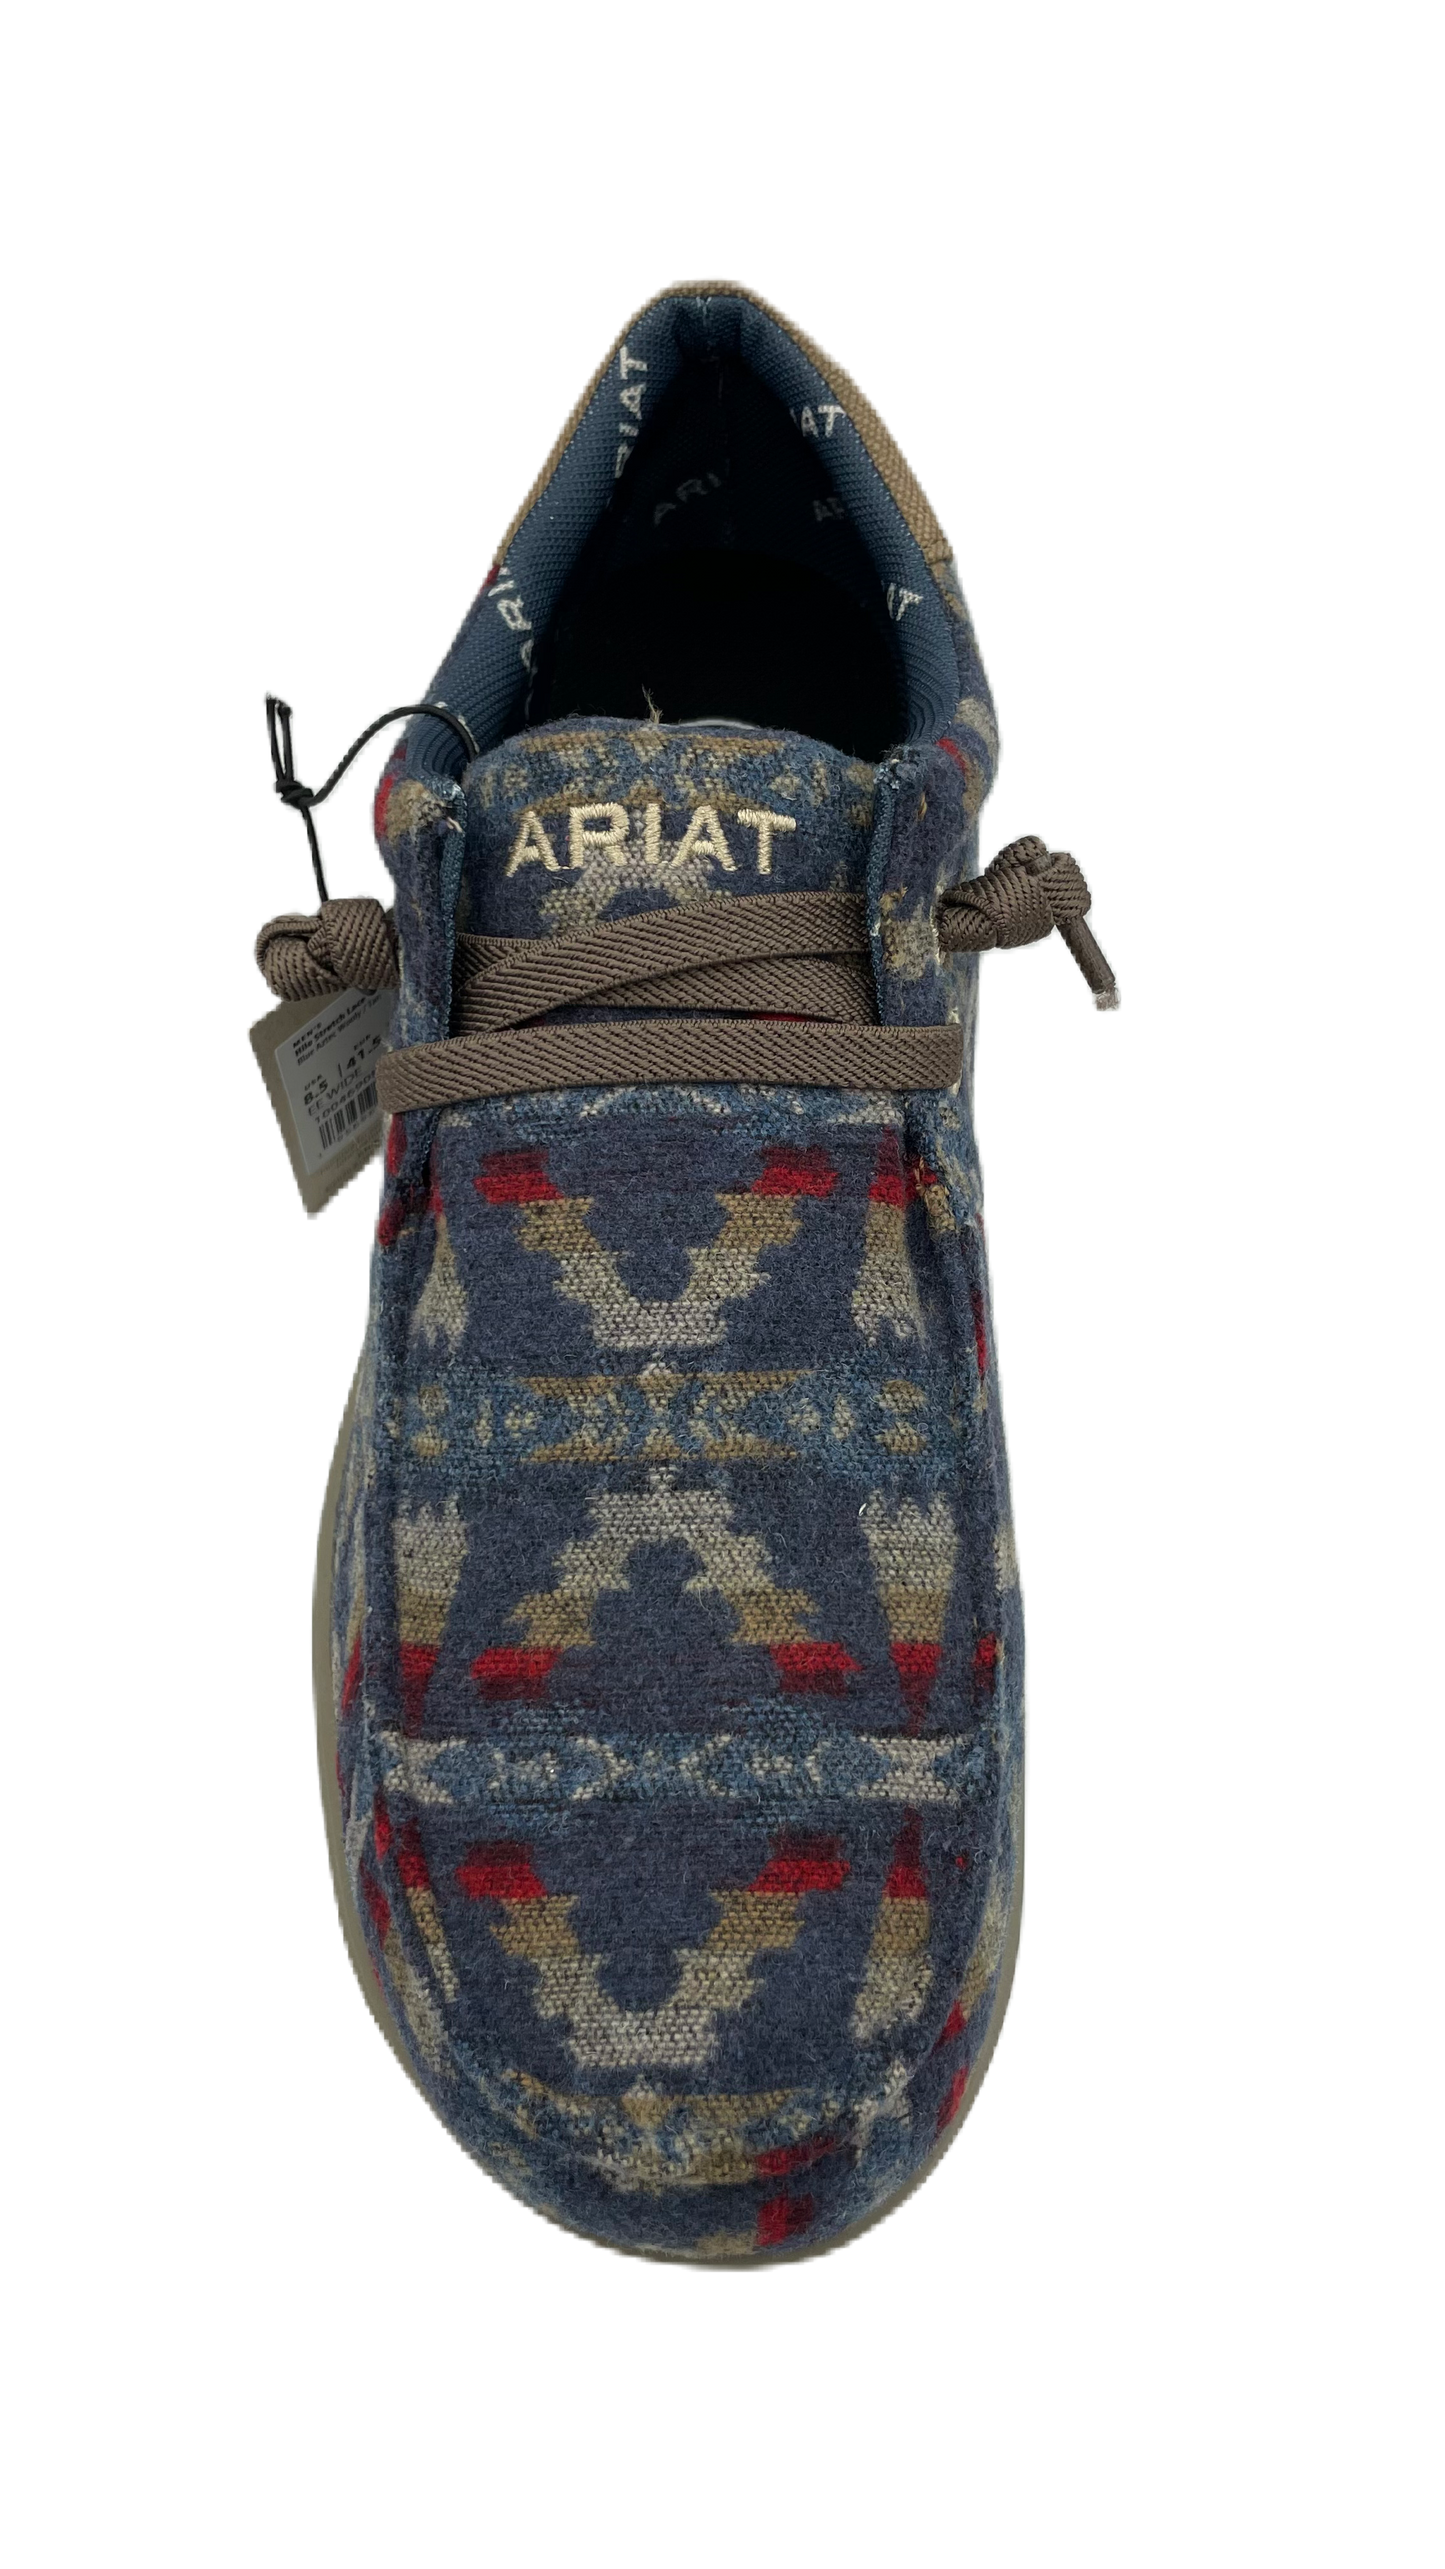 Zapato Ariat caballero con diseño azteca en azul y colores